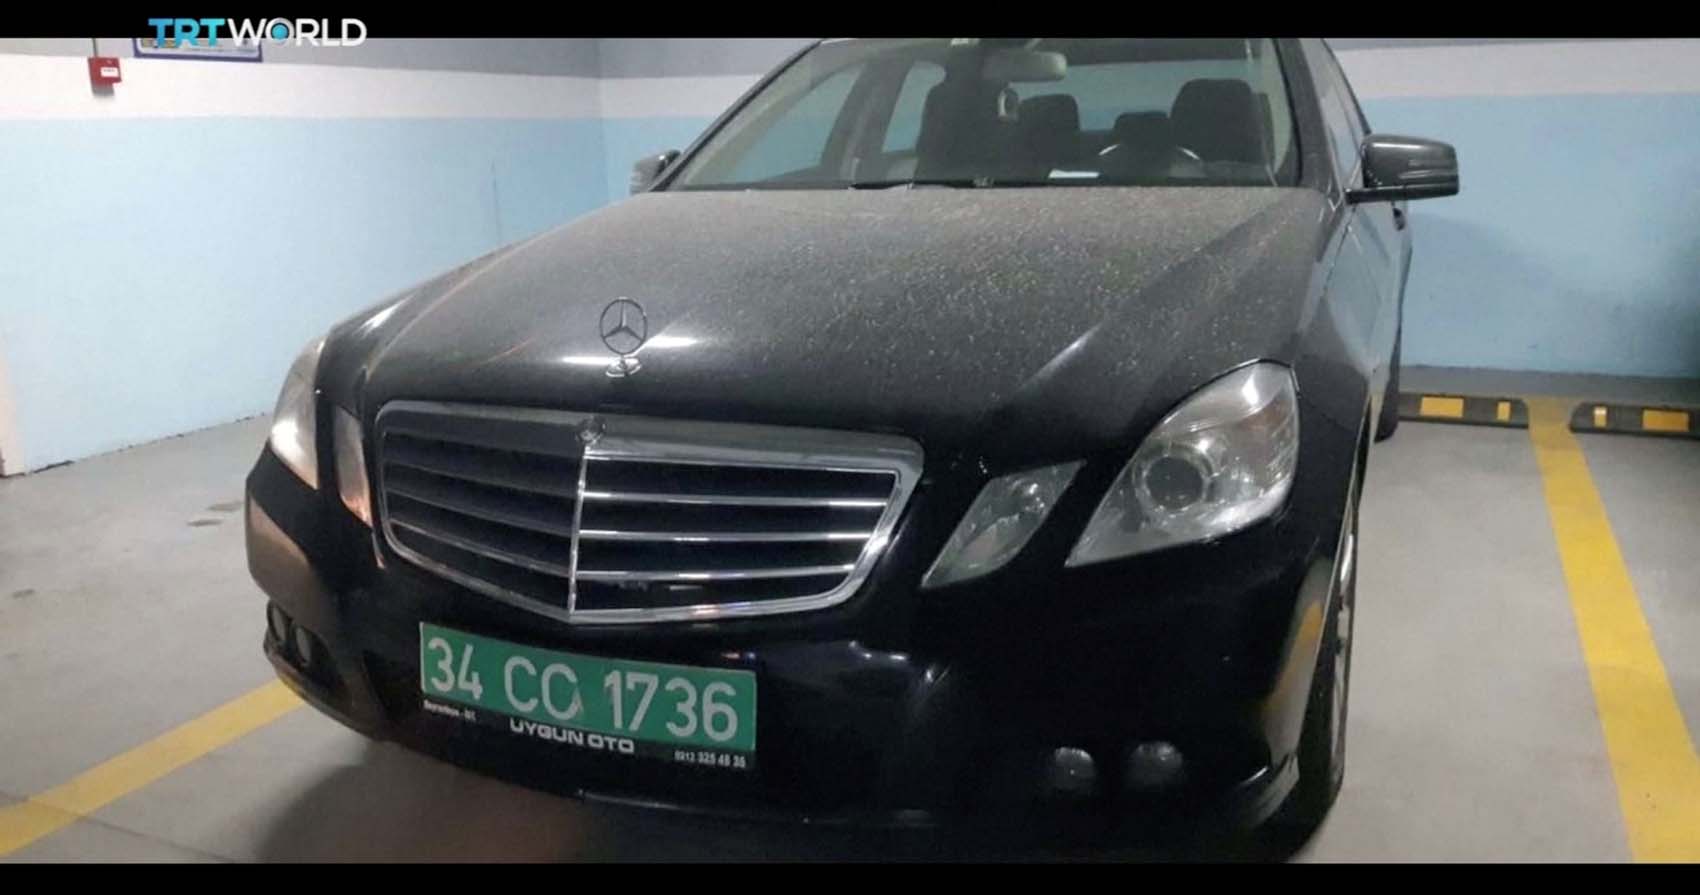 Investigadores turcos encuentran pertenencias de Khashoggi en carro del consulado saudí